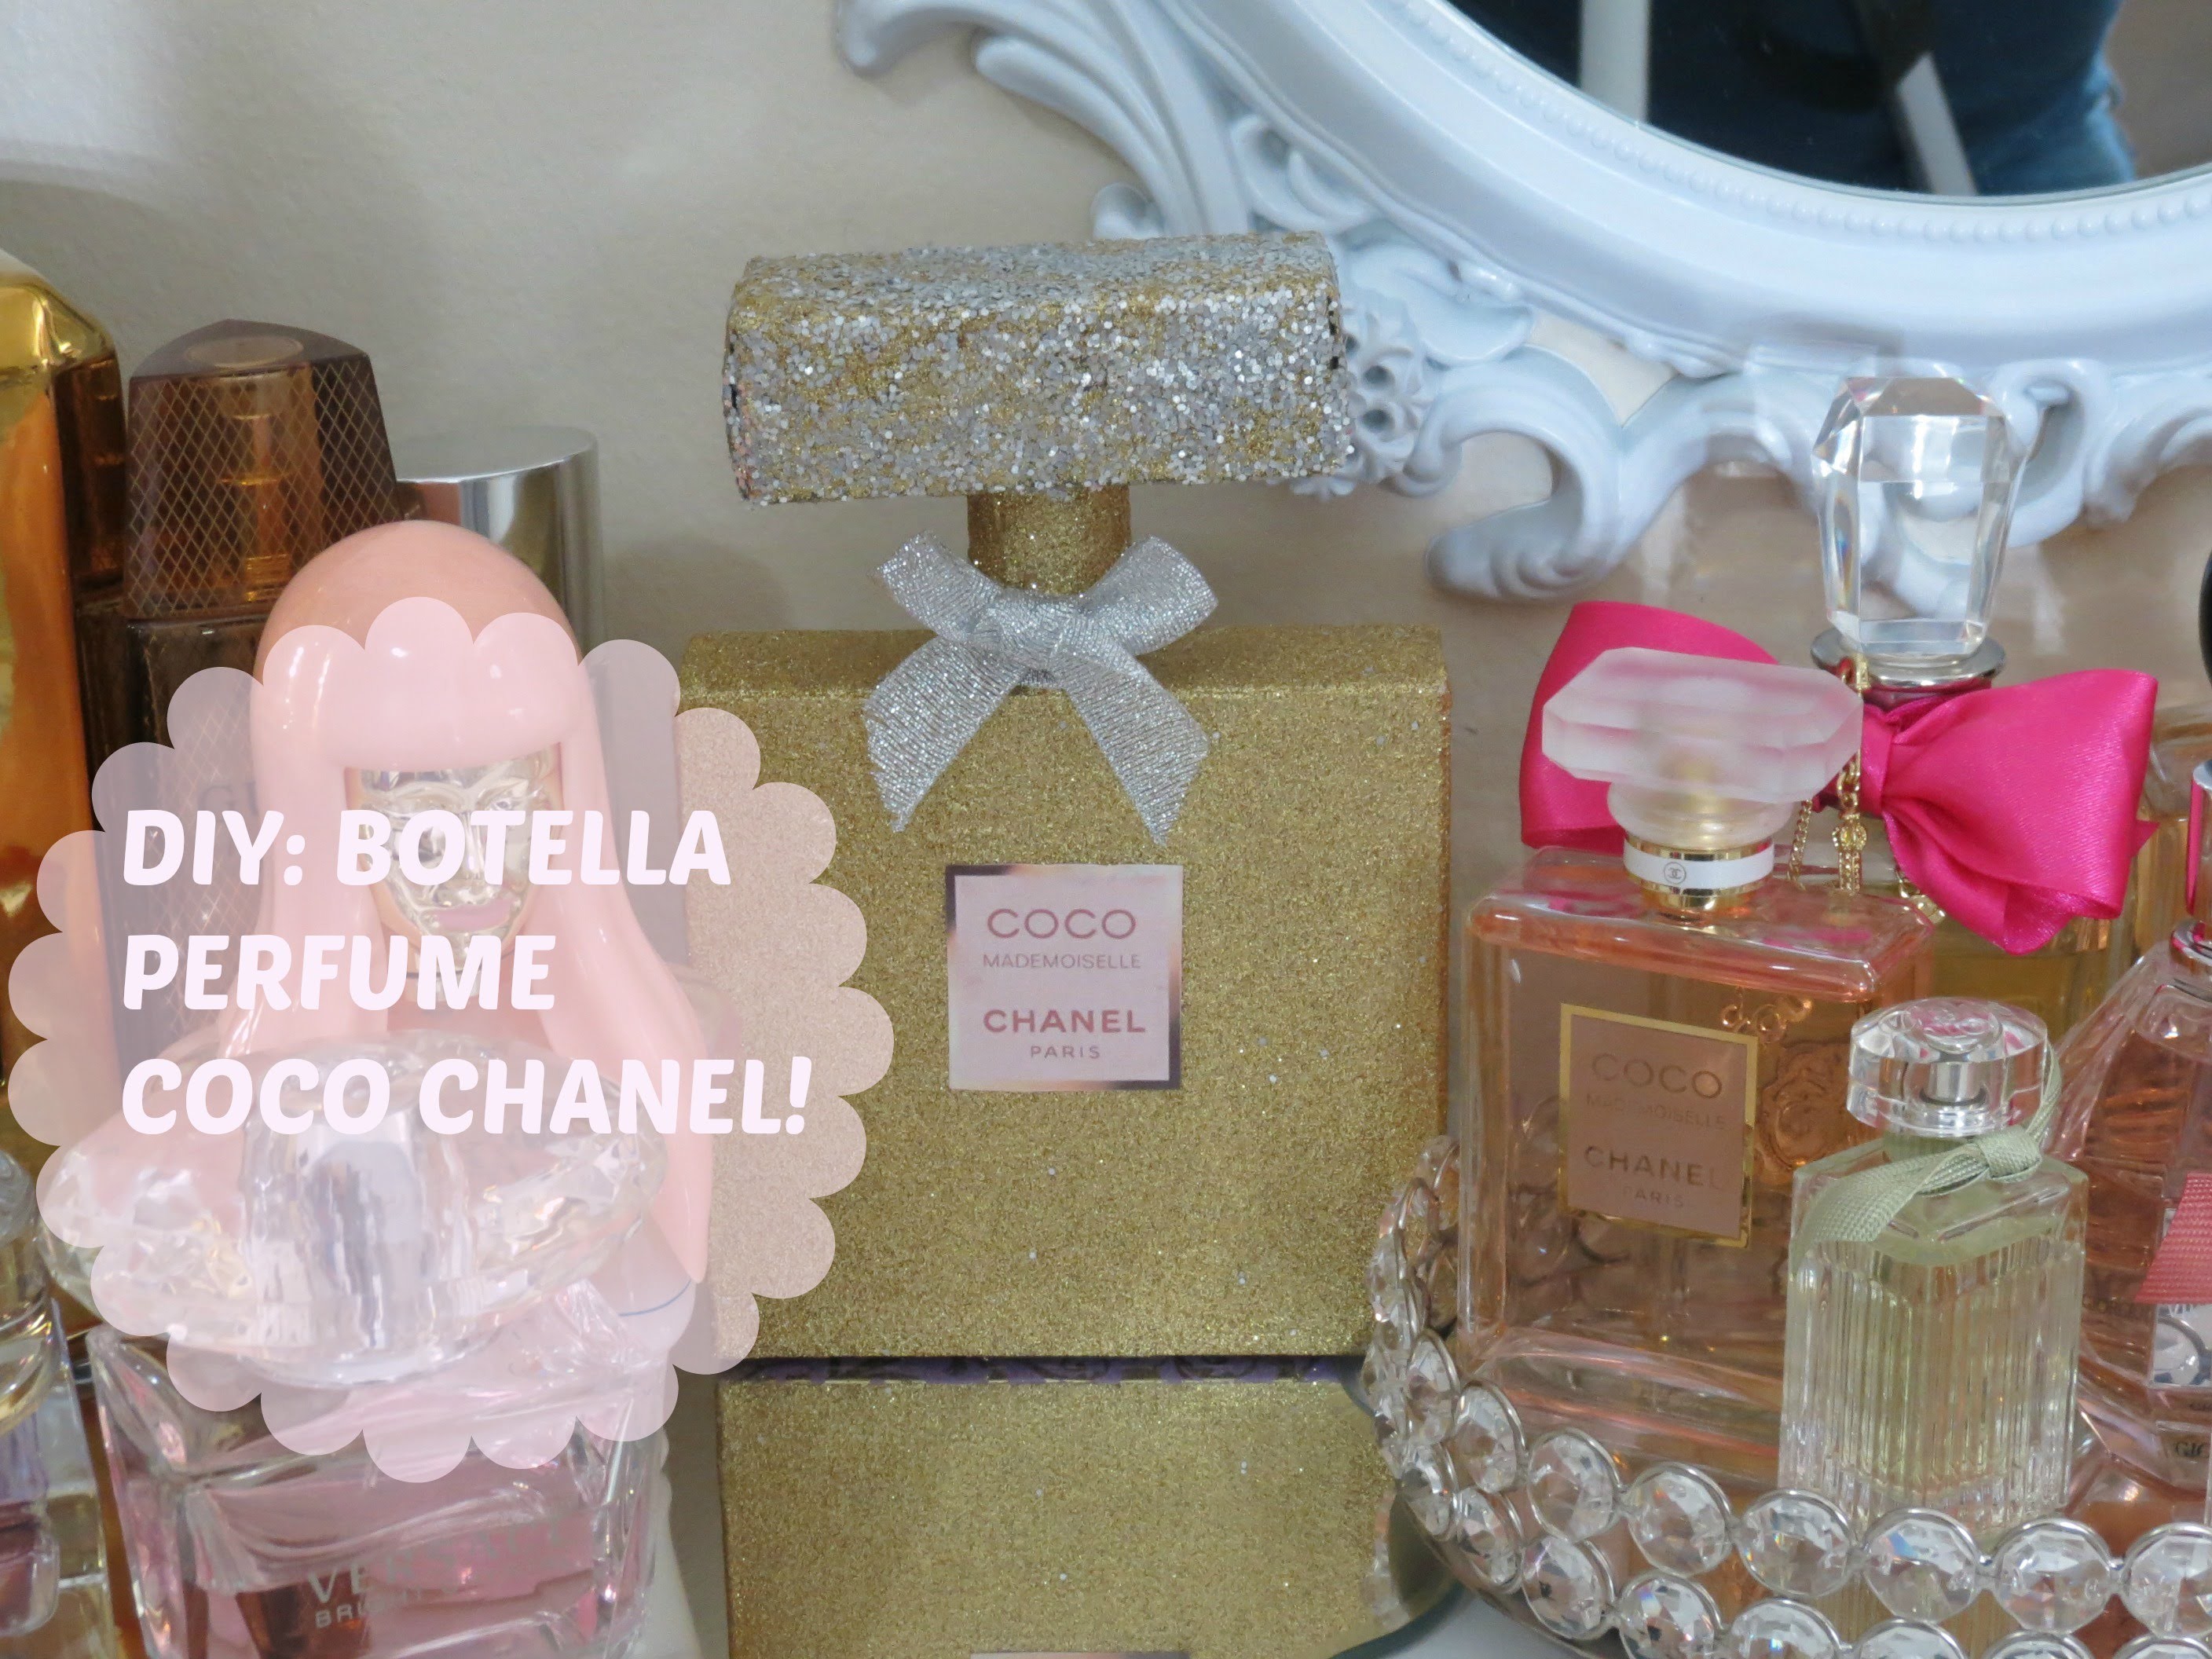 DIY: Botella Perfume Coco Chanel-Decora Tu Area De Perfumes!